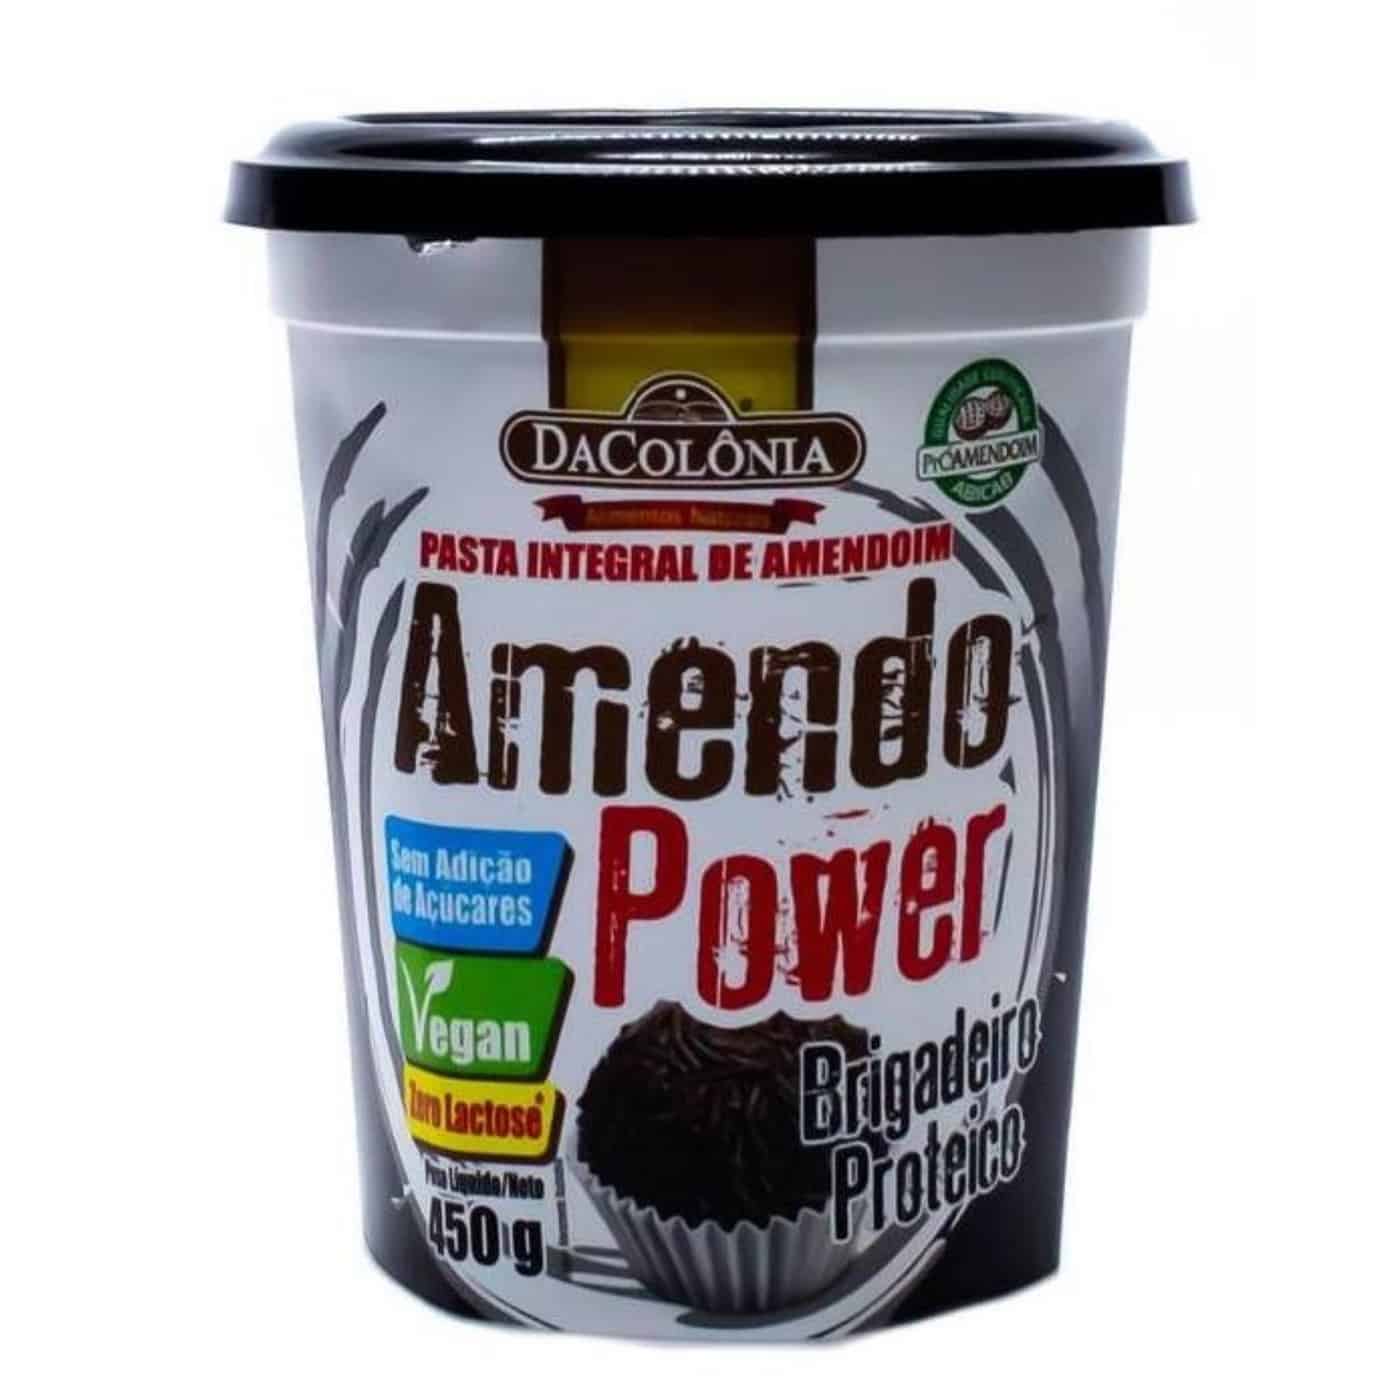 Pasta de Amendoim Amendo Power Doce de Leite 450g - Loja virtual DaColônia  Alimentos Naturais